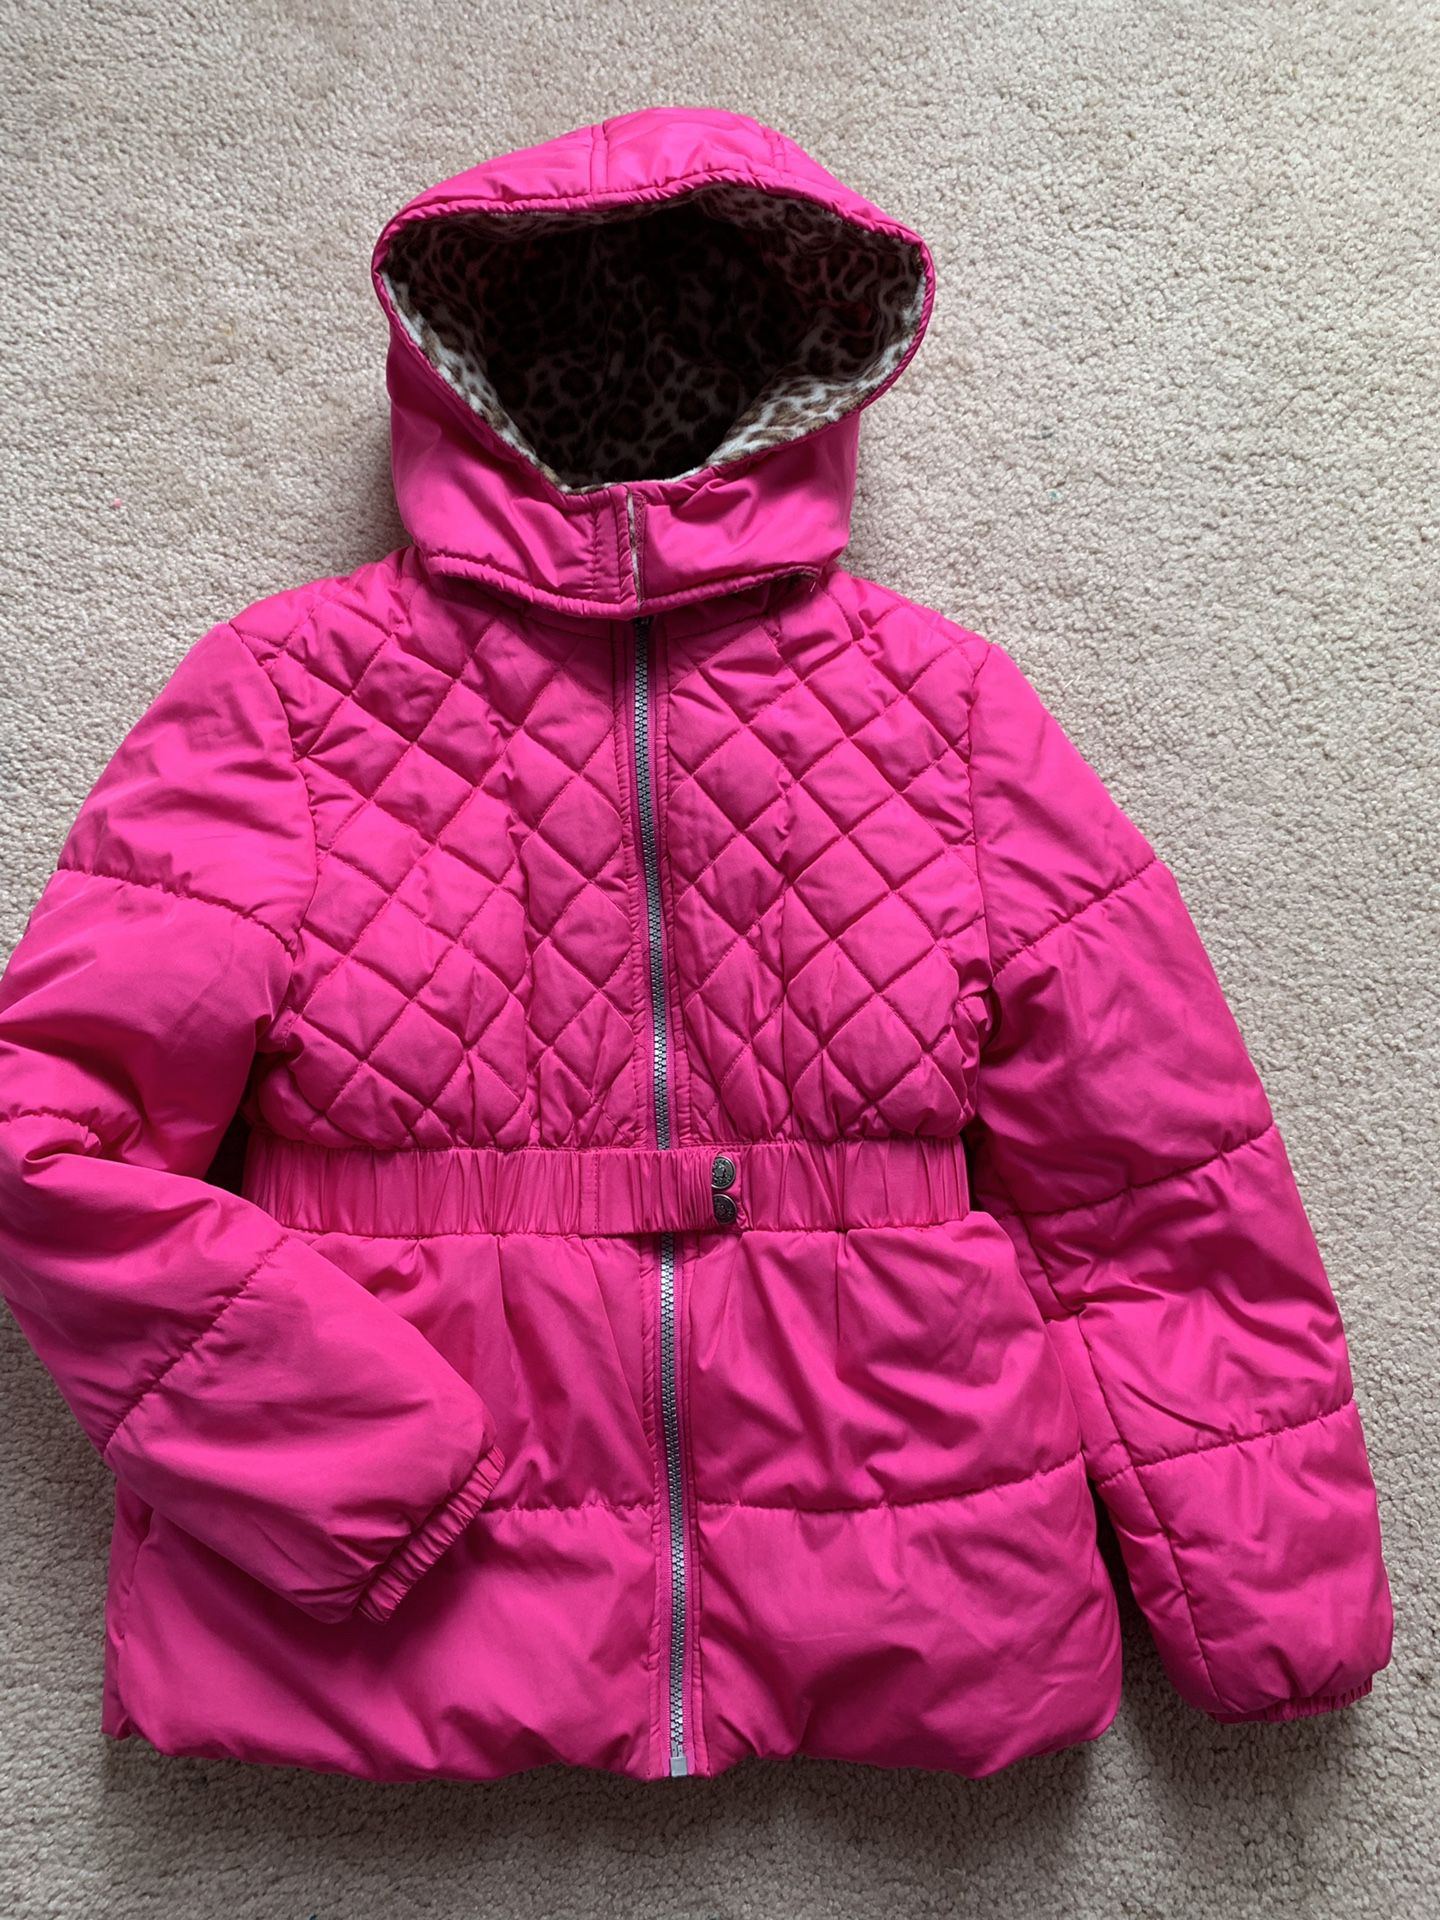 Girl jacket Size 10/12 Medium